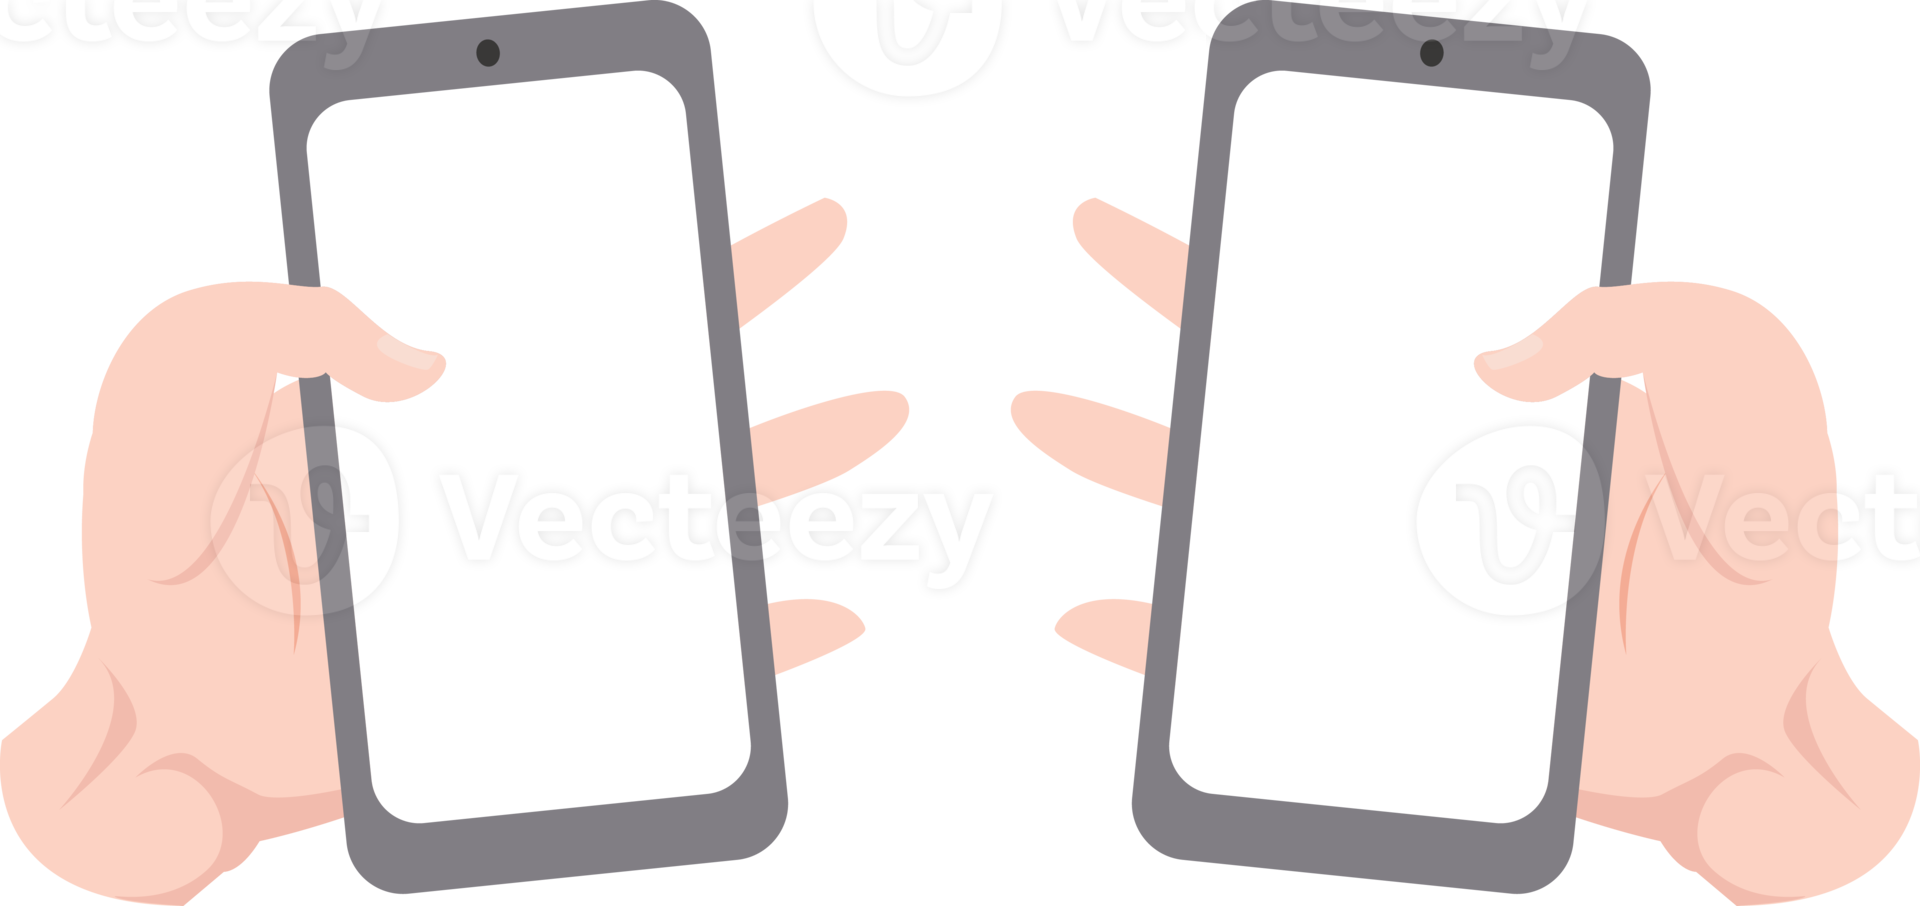 conjunto de mão direita e esquerda segurando smartphone com tela vazia para maquete de modelo png